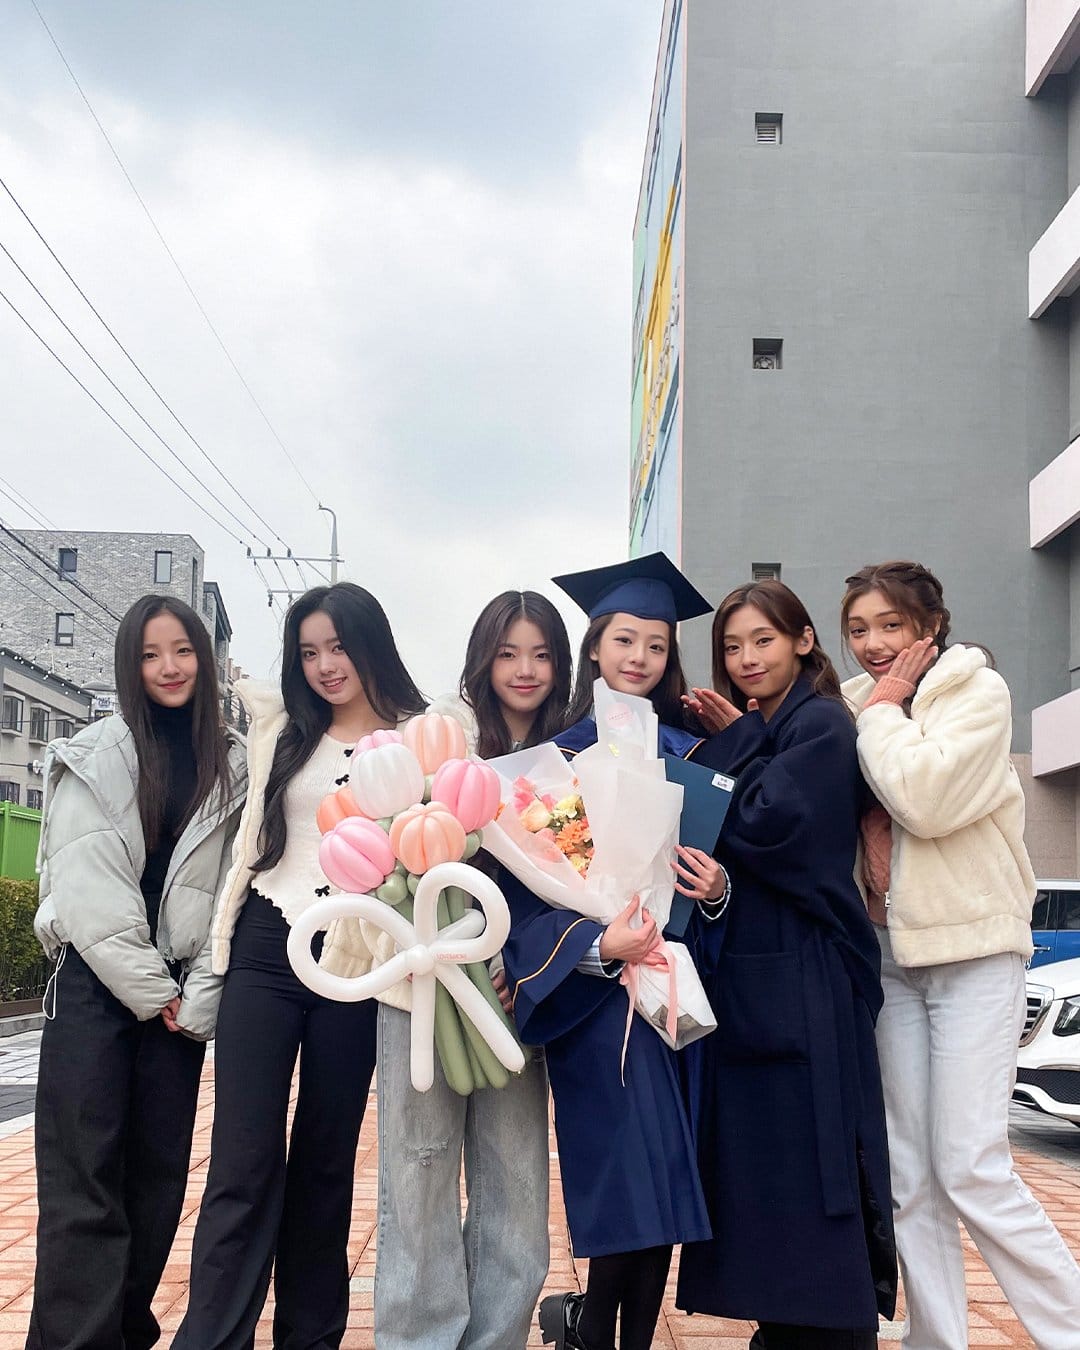 오늘 졸업식사진 올라온 아이돌